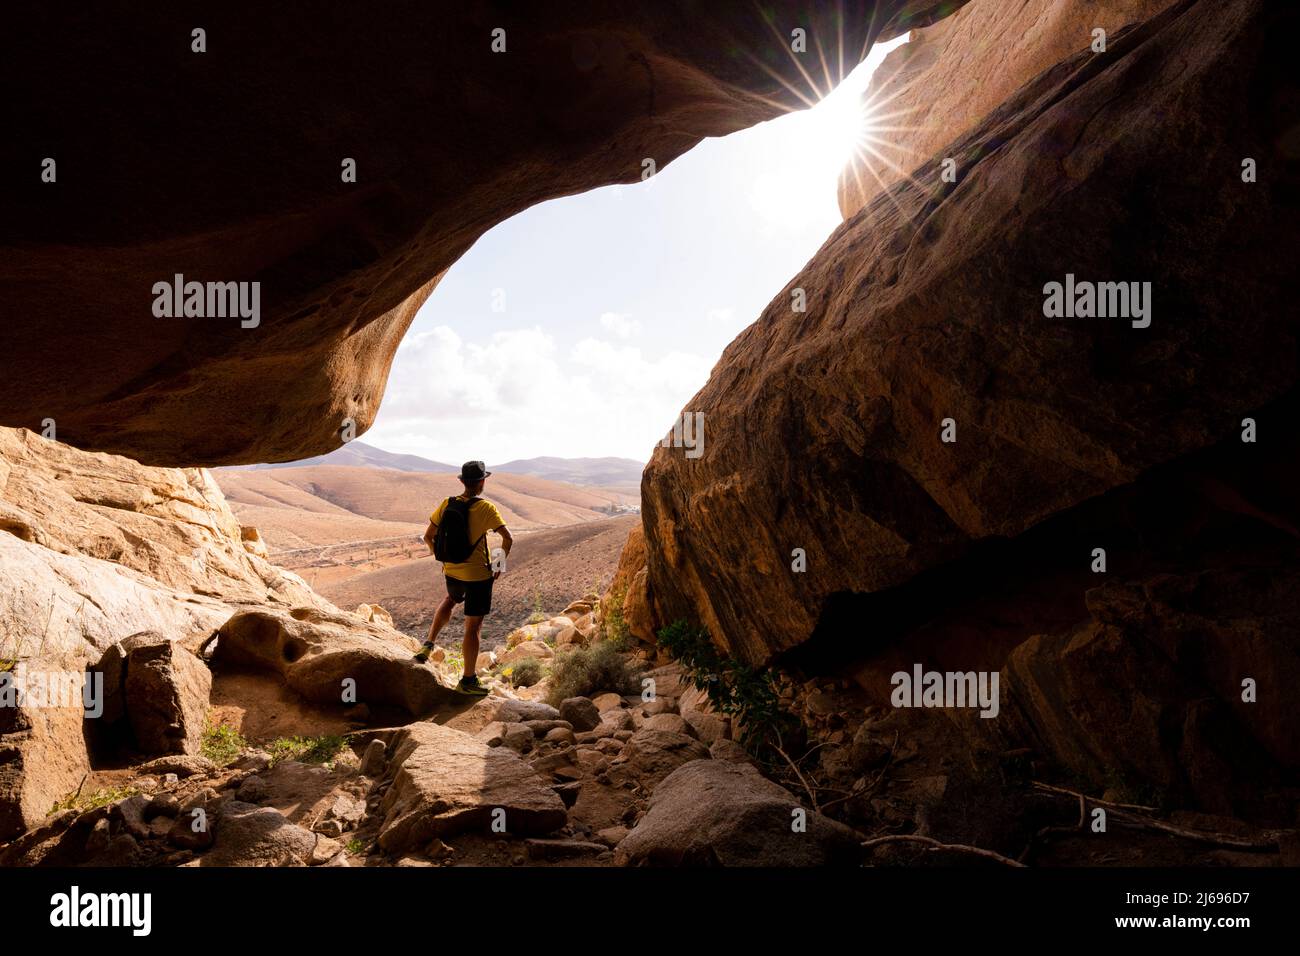 Uomo che gode della vista in piedi all'interno dei canyon di arenaria, Barranco de las Penitas, Fuerteventura, Isole Canarie, Spagna, Atlantico, Europa Foto Stock